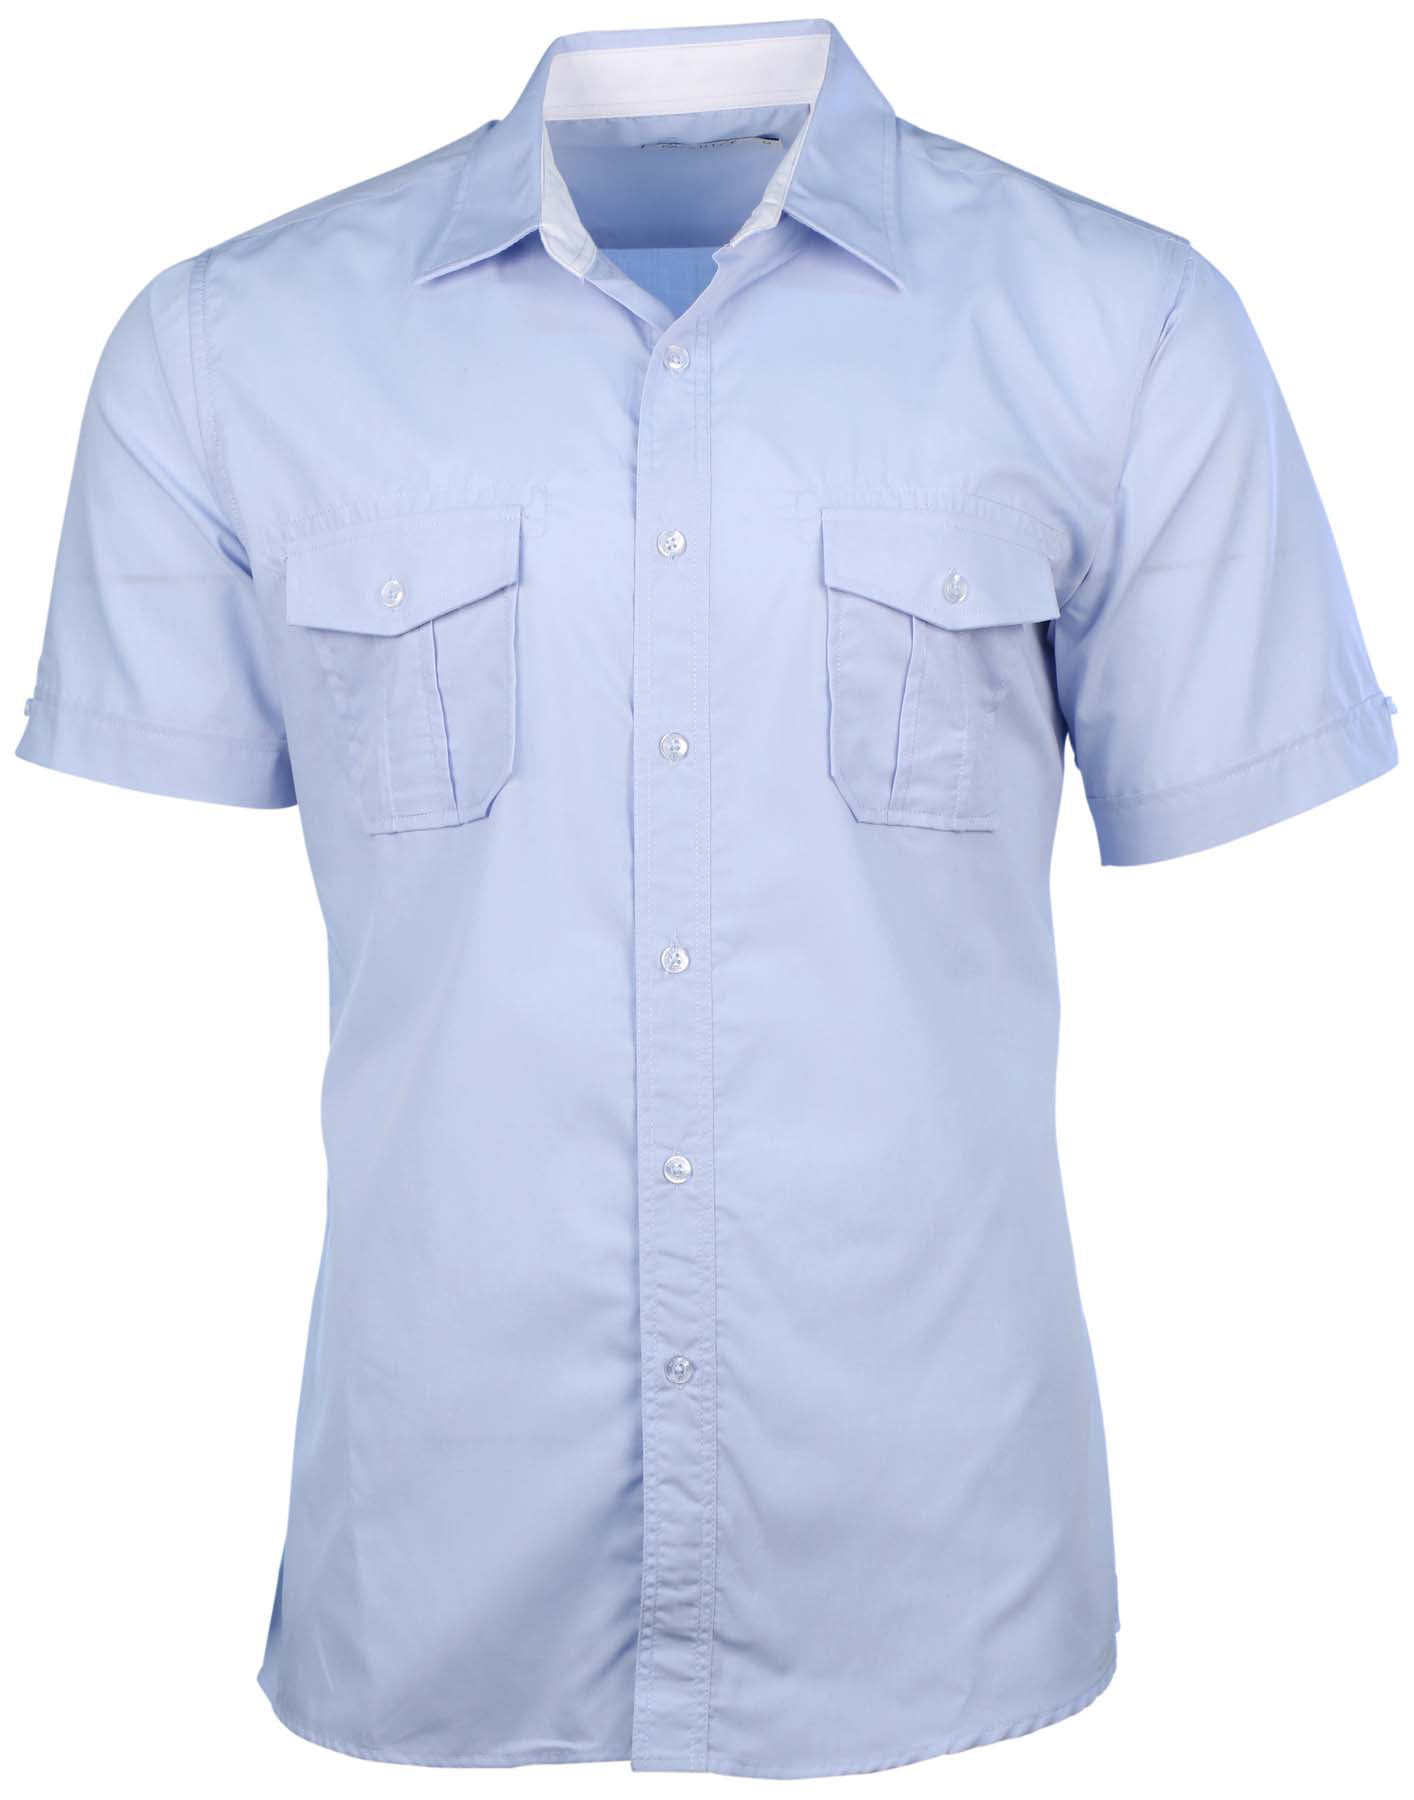 Collection Men's 2-Pocket Short Sleeve Button Down Shirt - Walmart.com